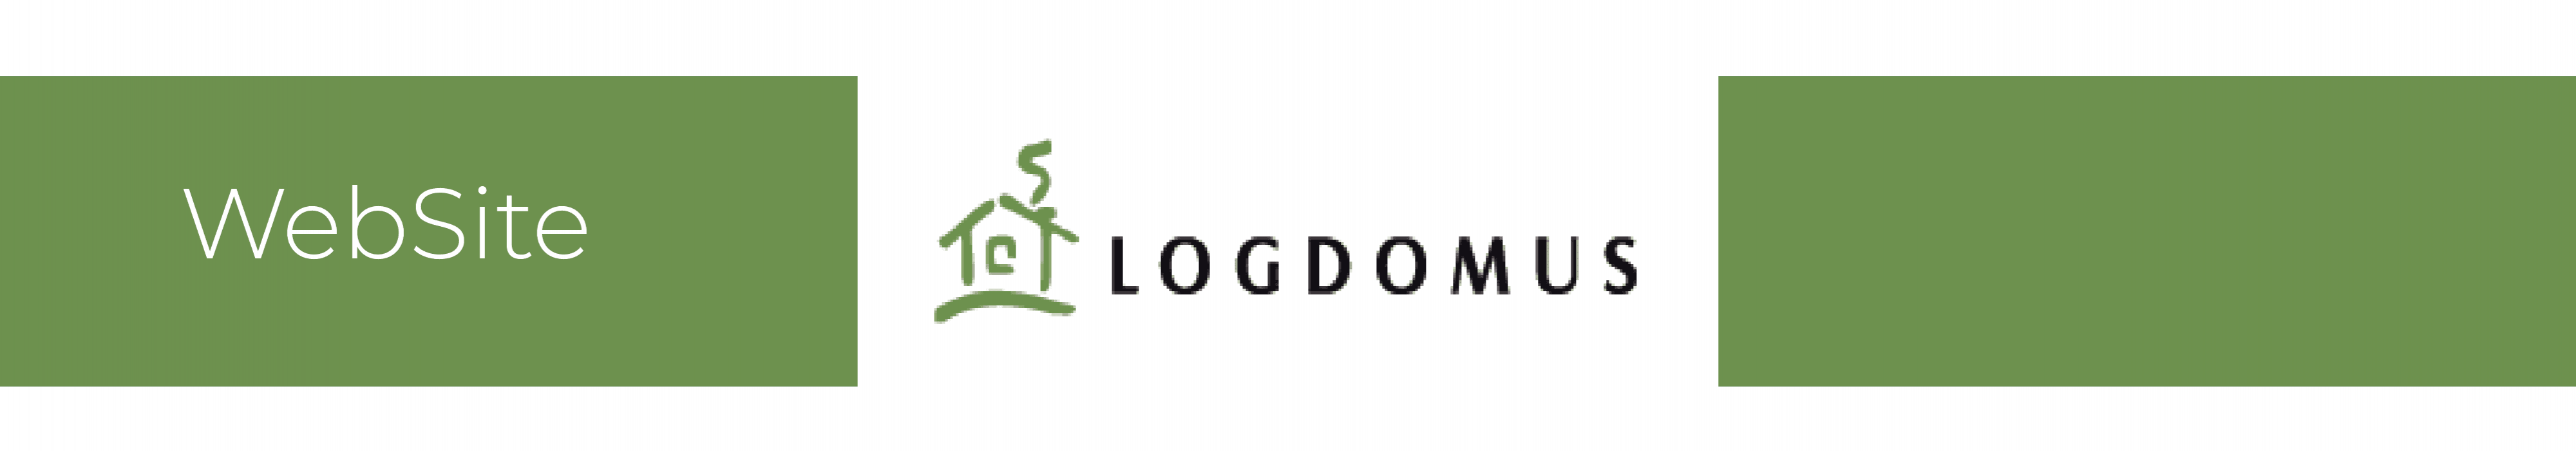 logdomus